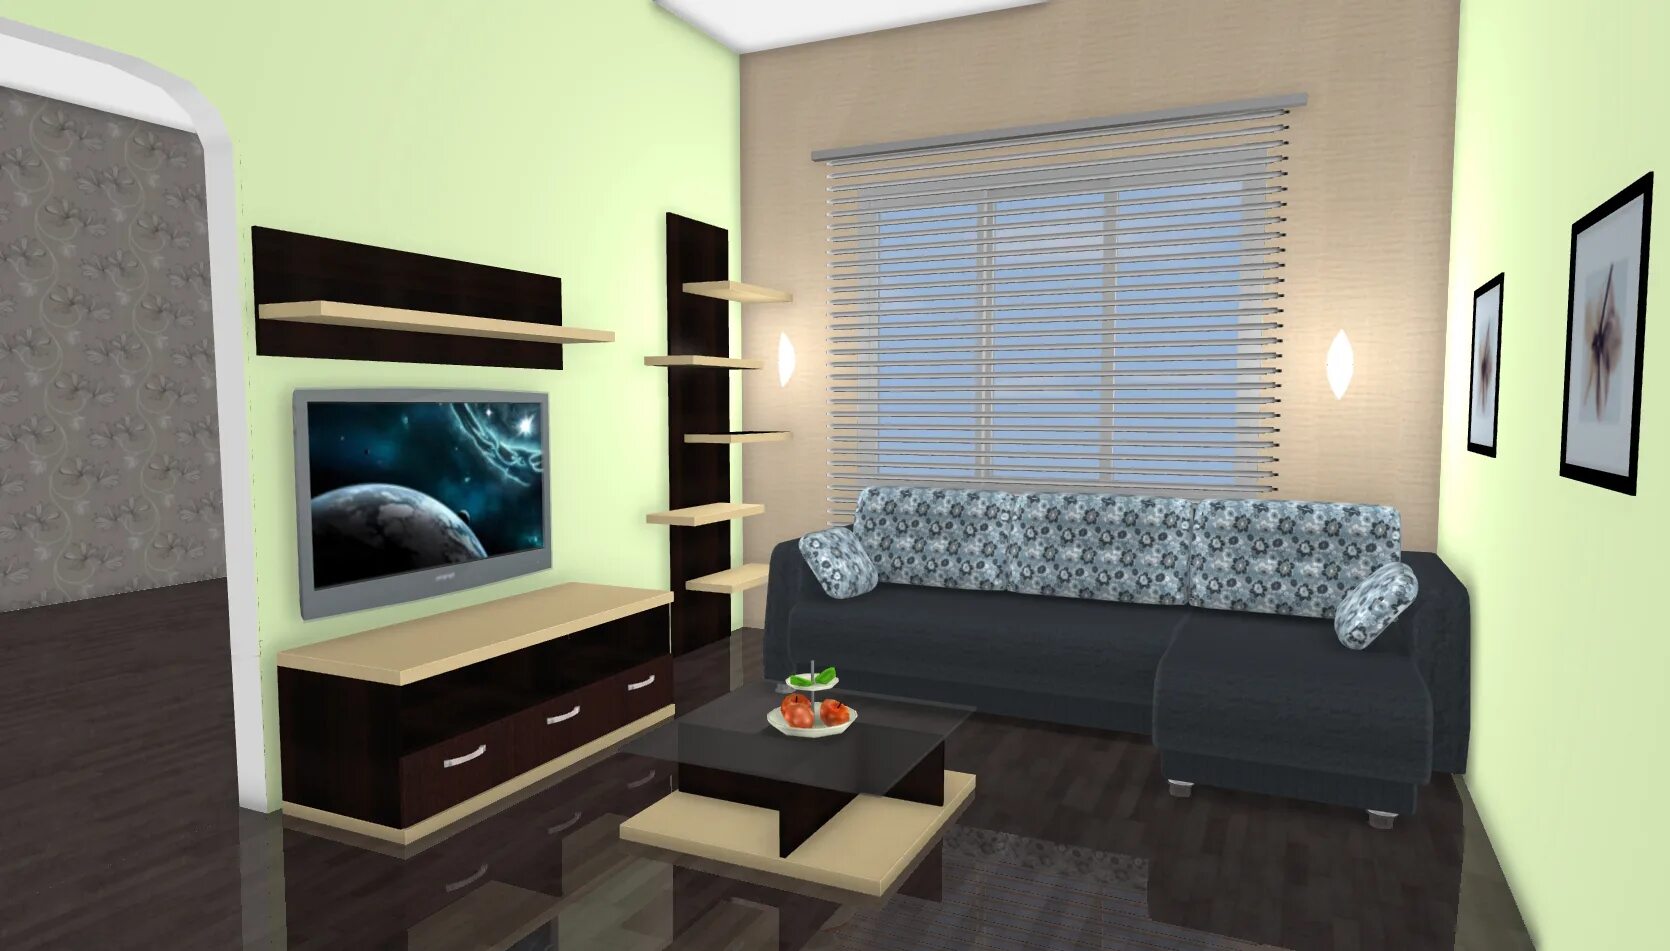 Outline 3. Комната с мебелью 3d. Моделирование комнаты с диваном.